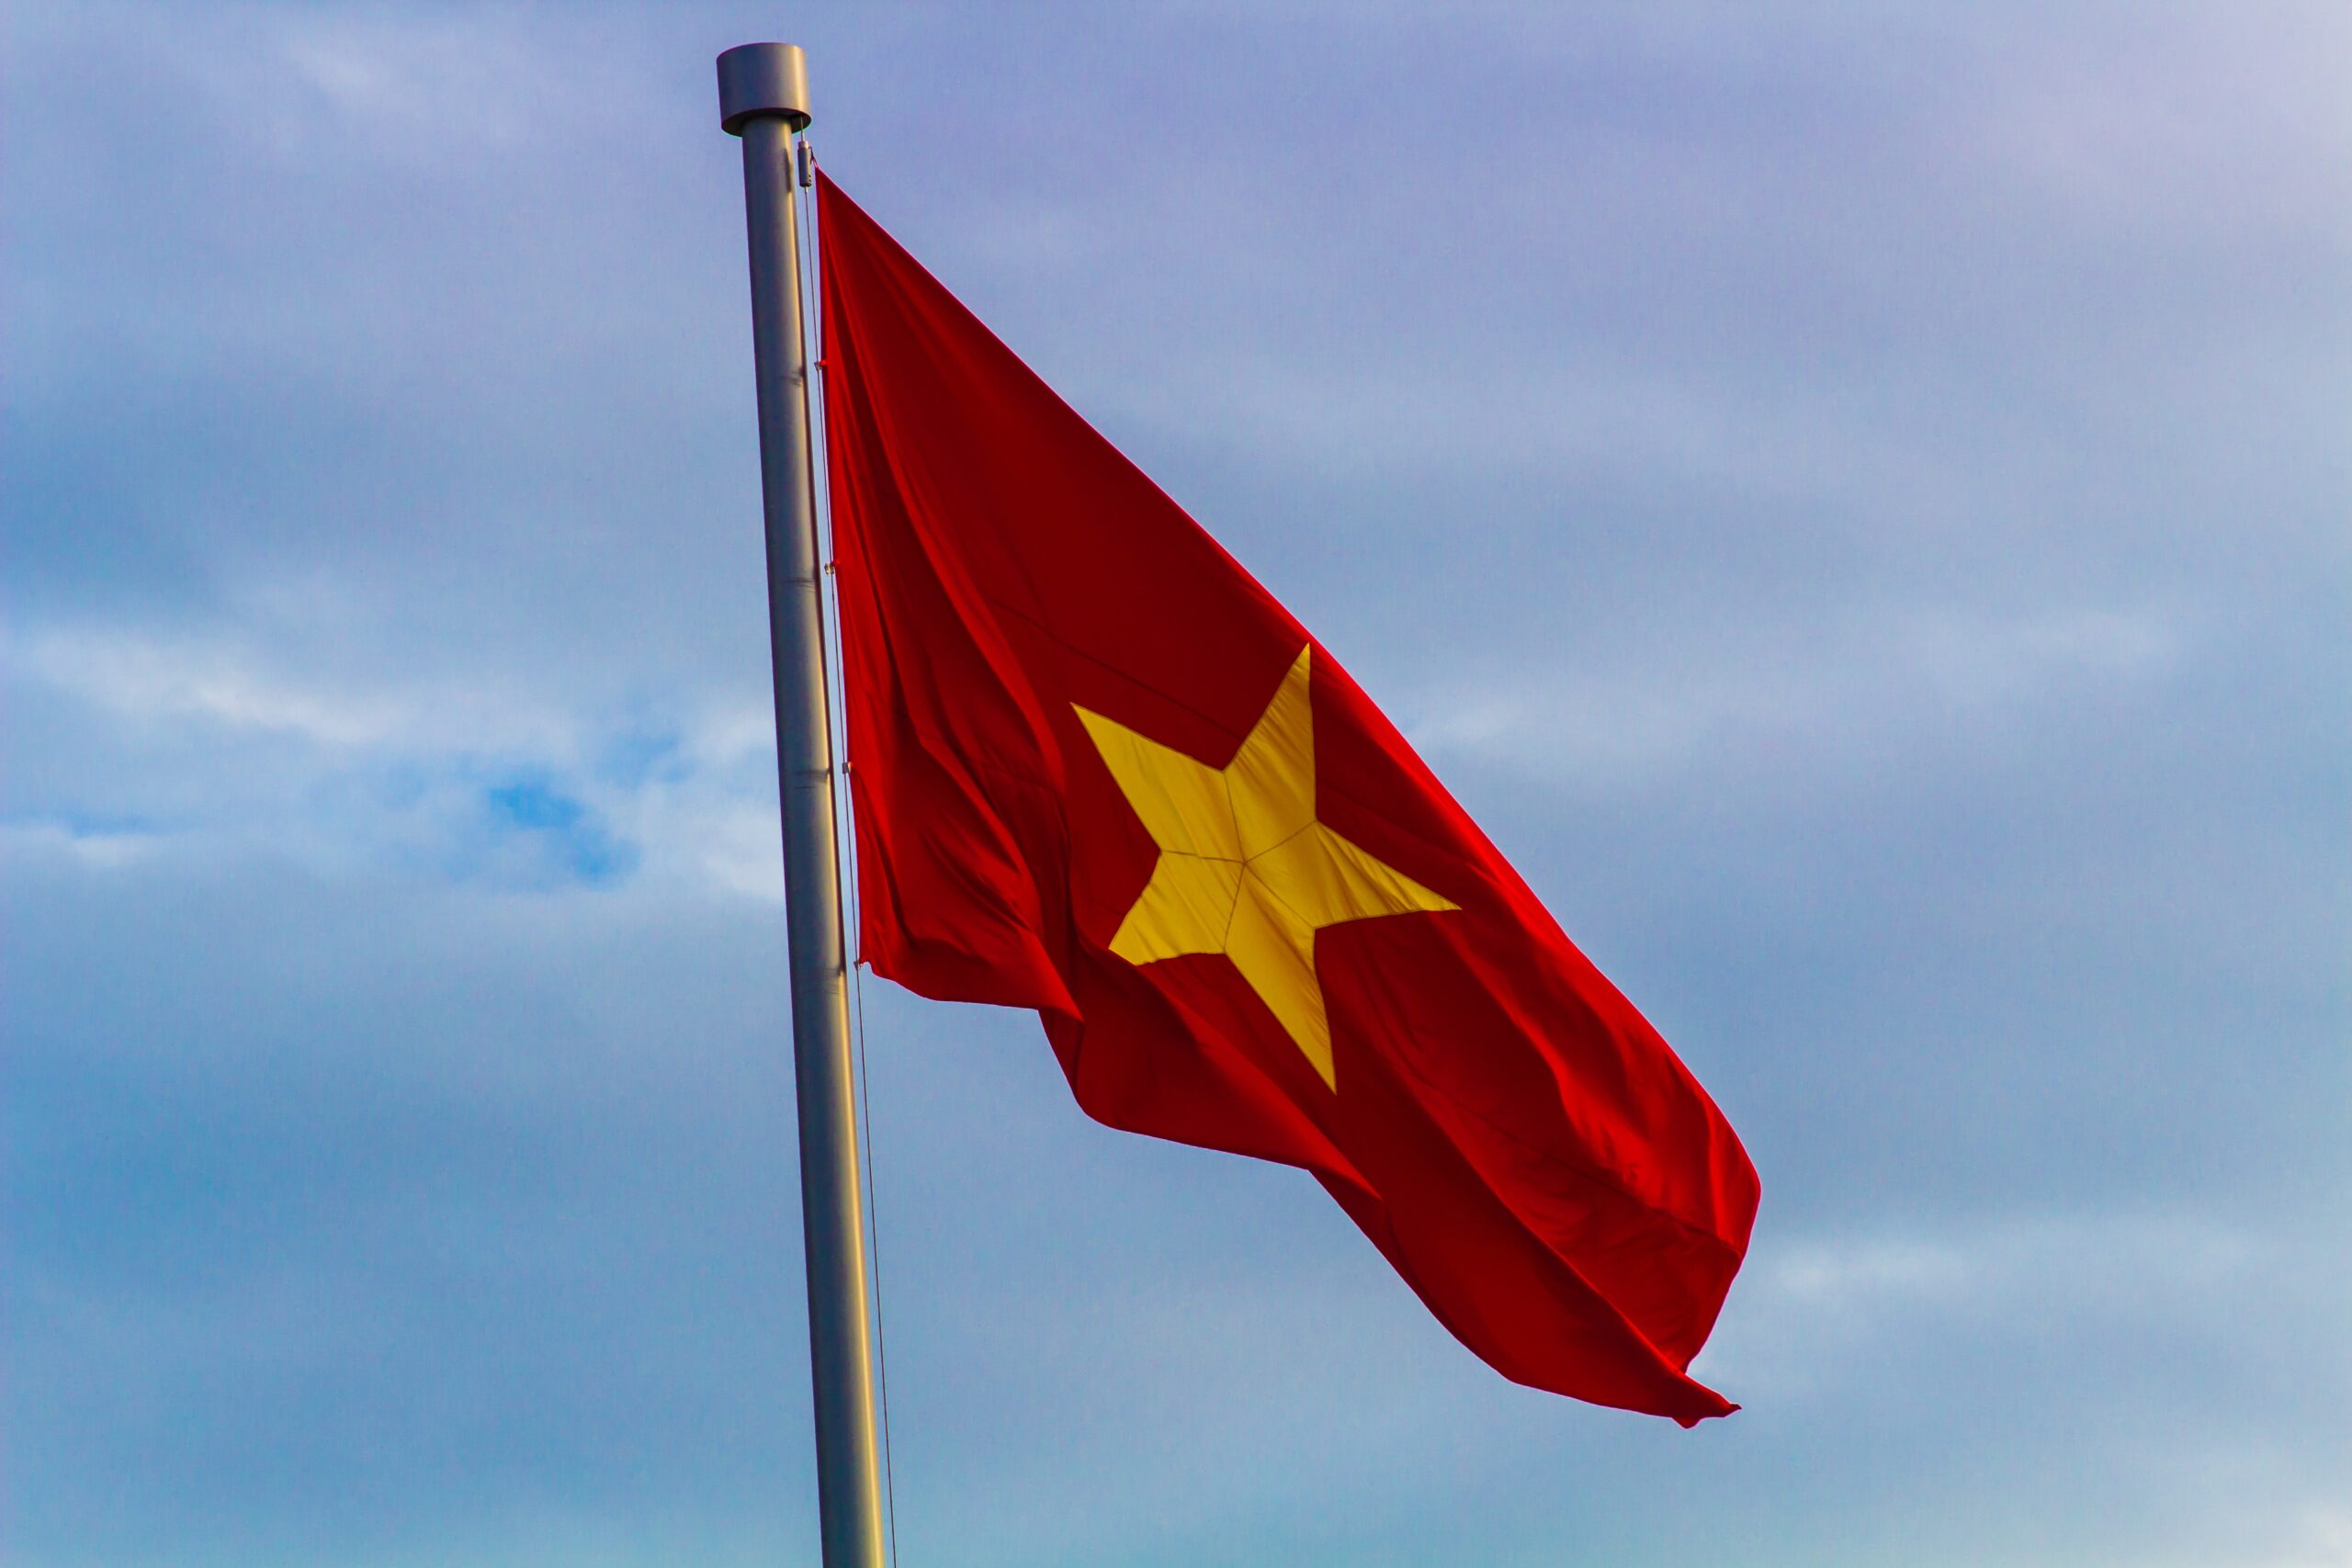 Cờ đỏ sao vàng là biểu tượng của sự độc lập, tự do và thắng lợi của dân tộc Việt Nam. Trong những năm qua, Việt Nam đã đứng lên vượt qua những thử thách và đạt được nhiều thành tựu to lớn. Hãy xem hình ảnh liên quan để cùng hưởng ứng tinh thần yêu nước, tự hào về sự phát triển của đất nước.